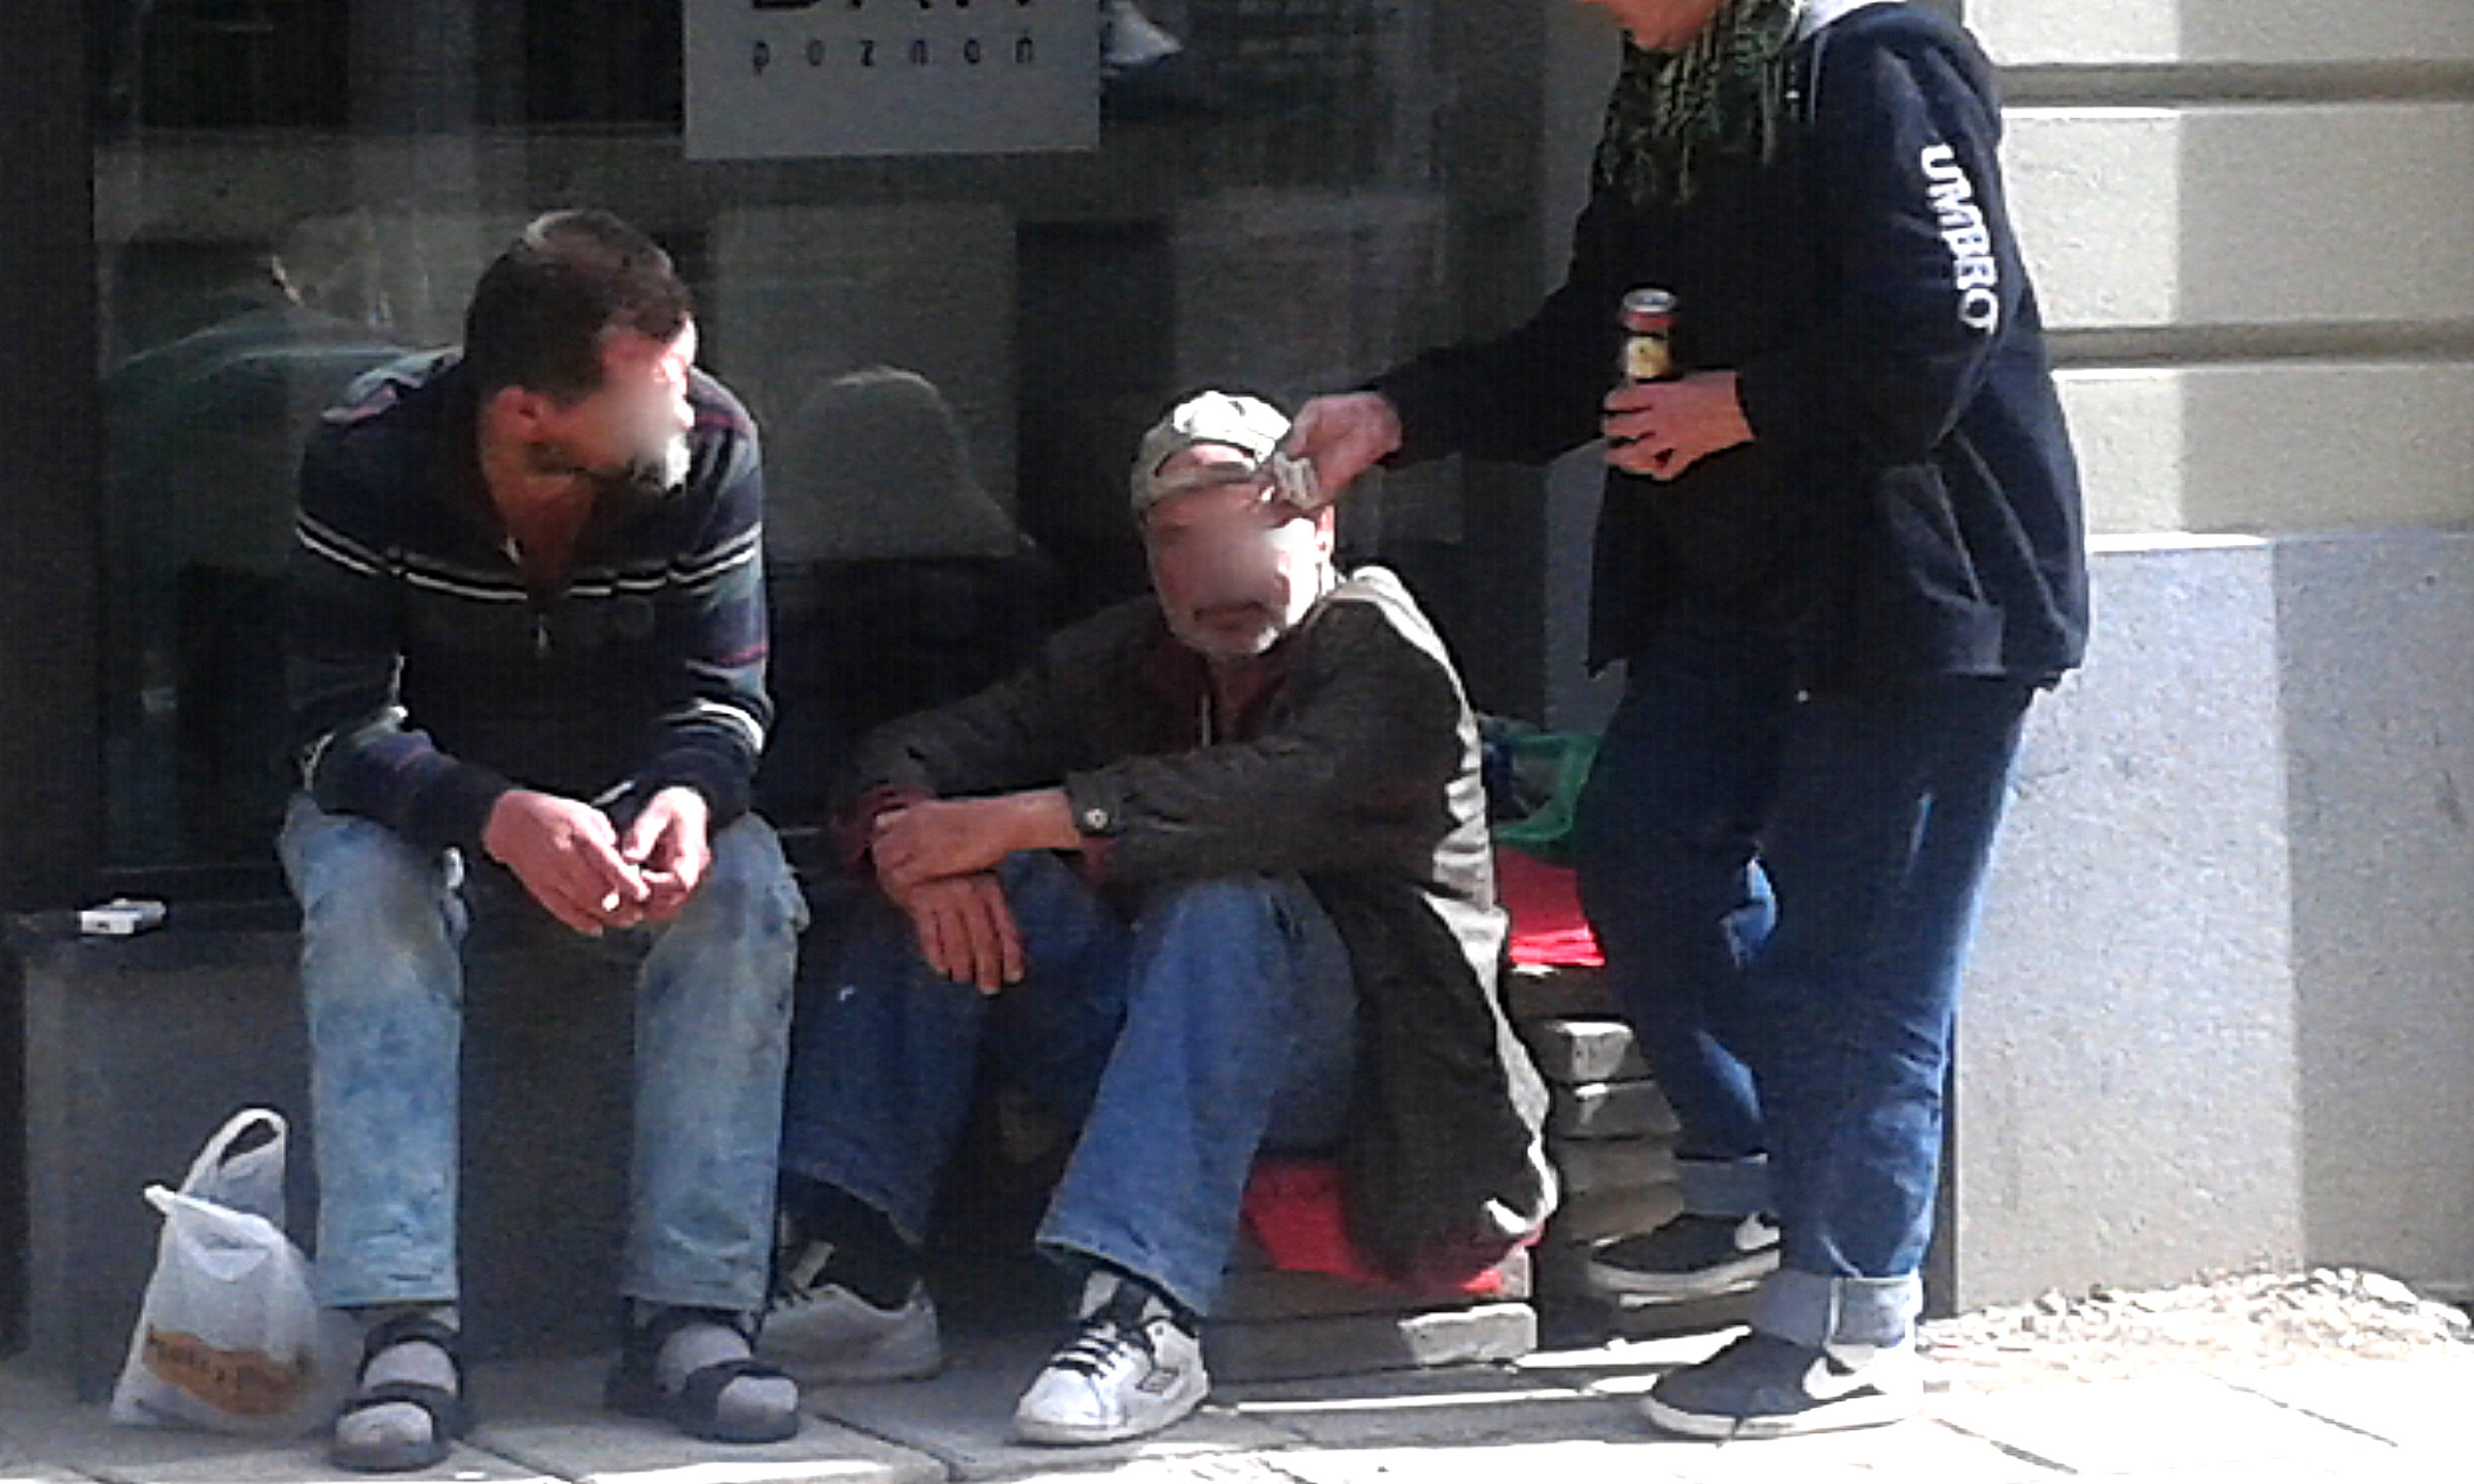 Fot. 2. Osoby prawdopodobnie bezdomne i bezrobotne, spożywający alkohol na ulicy Wrocławskiej, wykonanie własne 15.09.2015